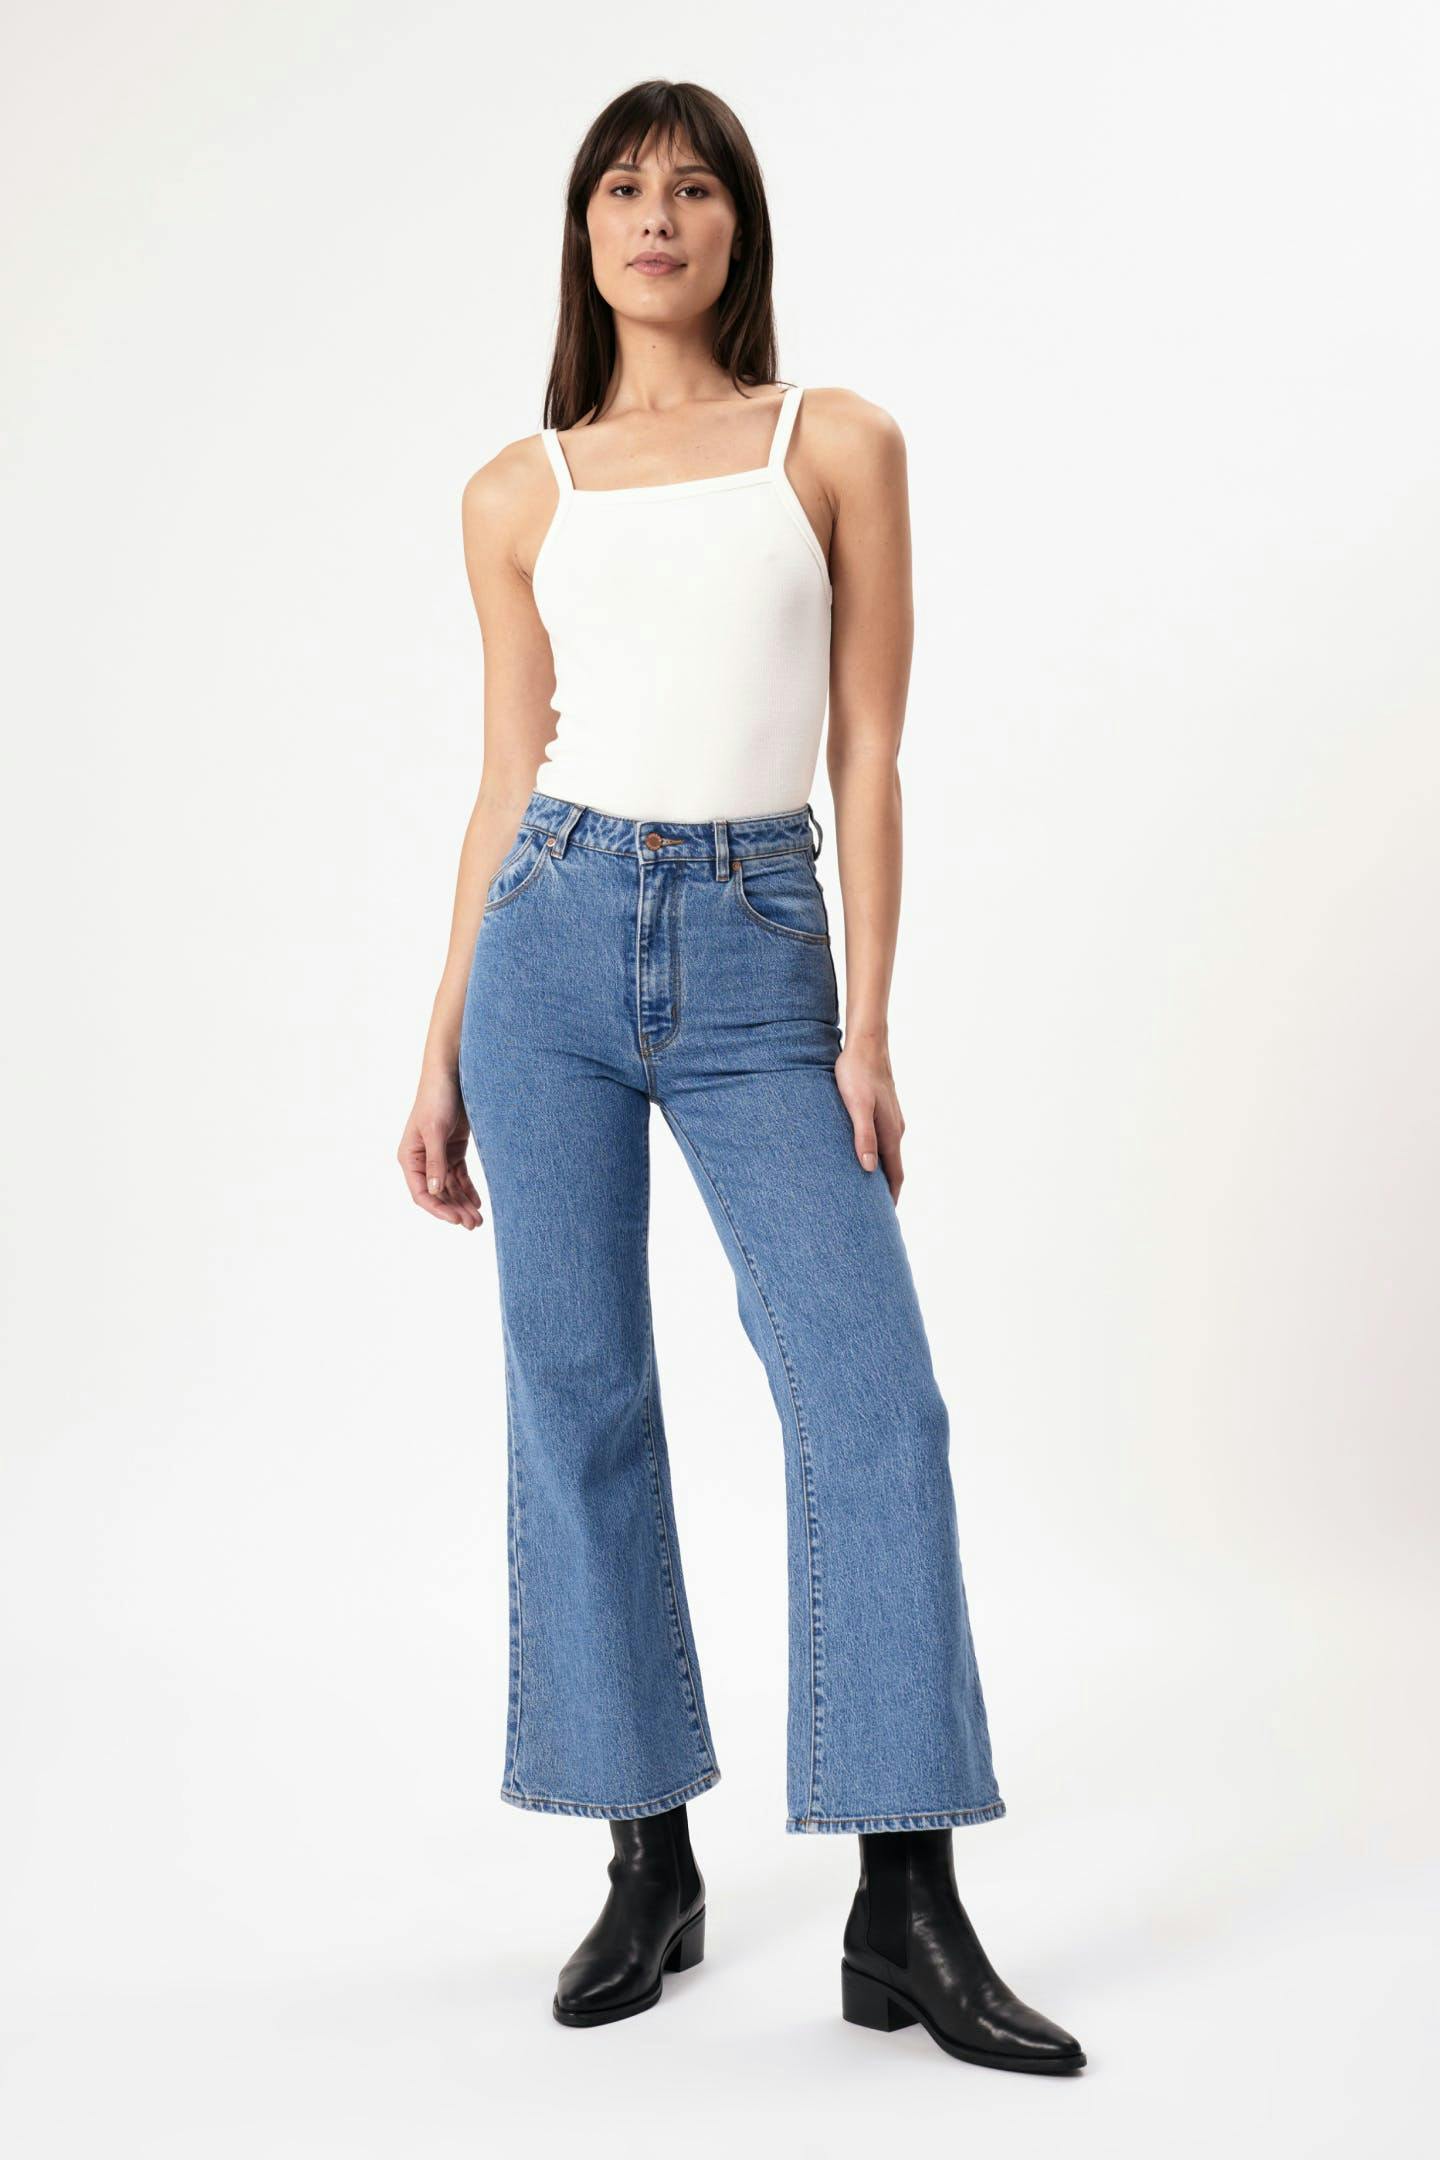 Buy Women's Denim Jeans Online | Rolla's Jeans